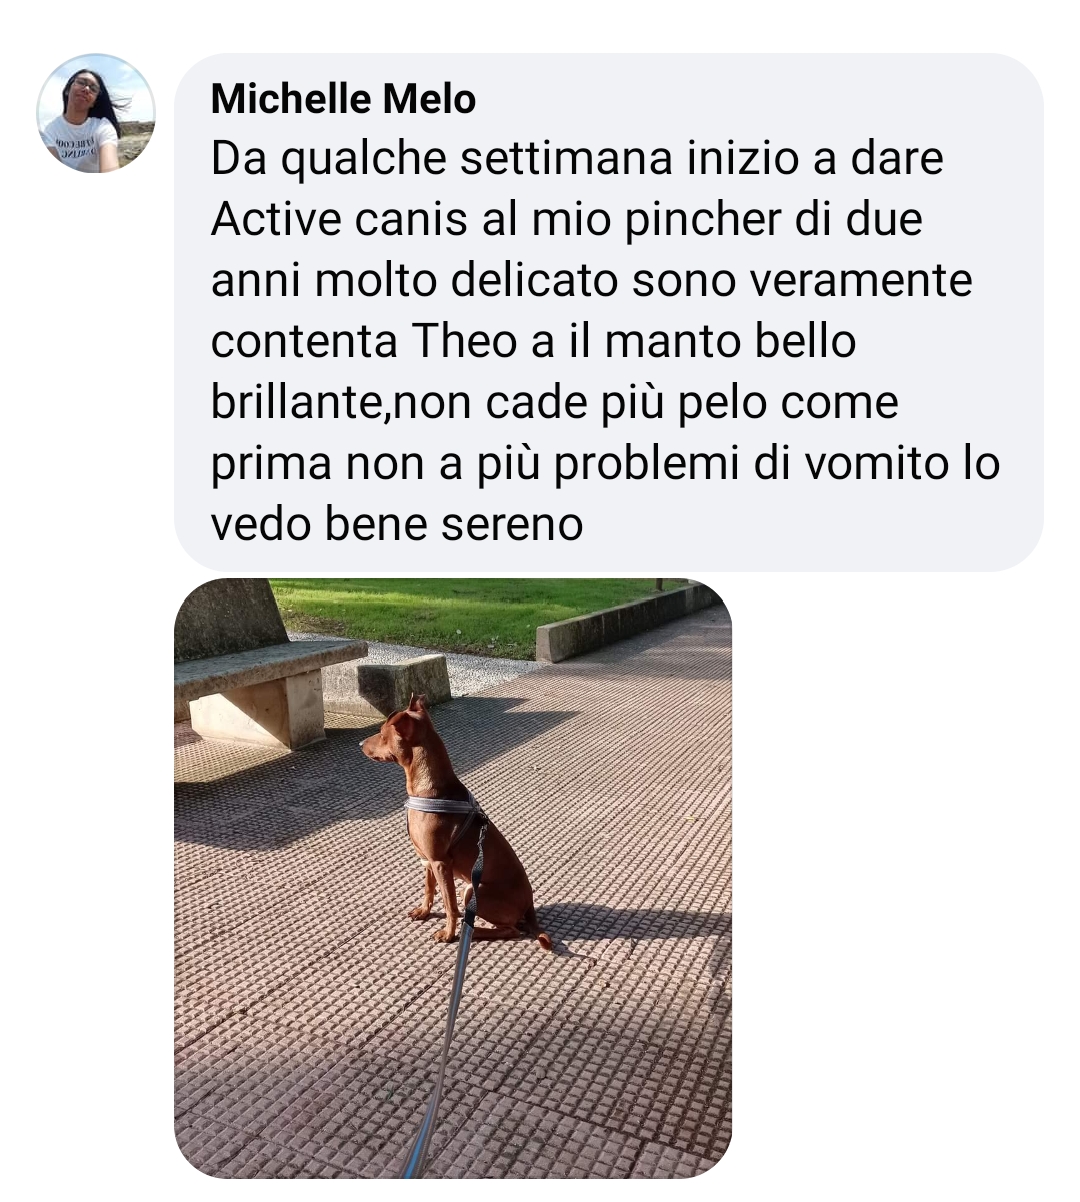 Michele Mello pincher vomito